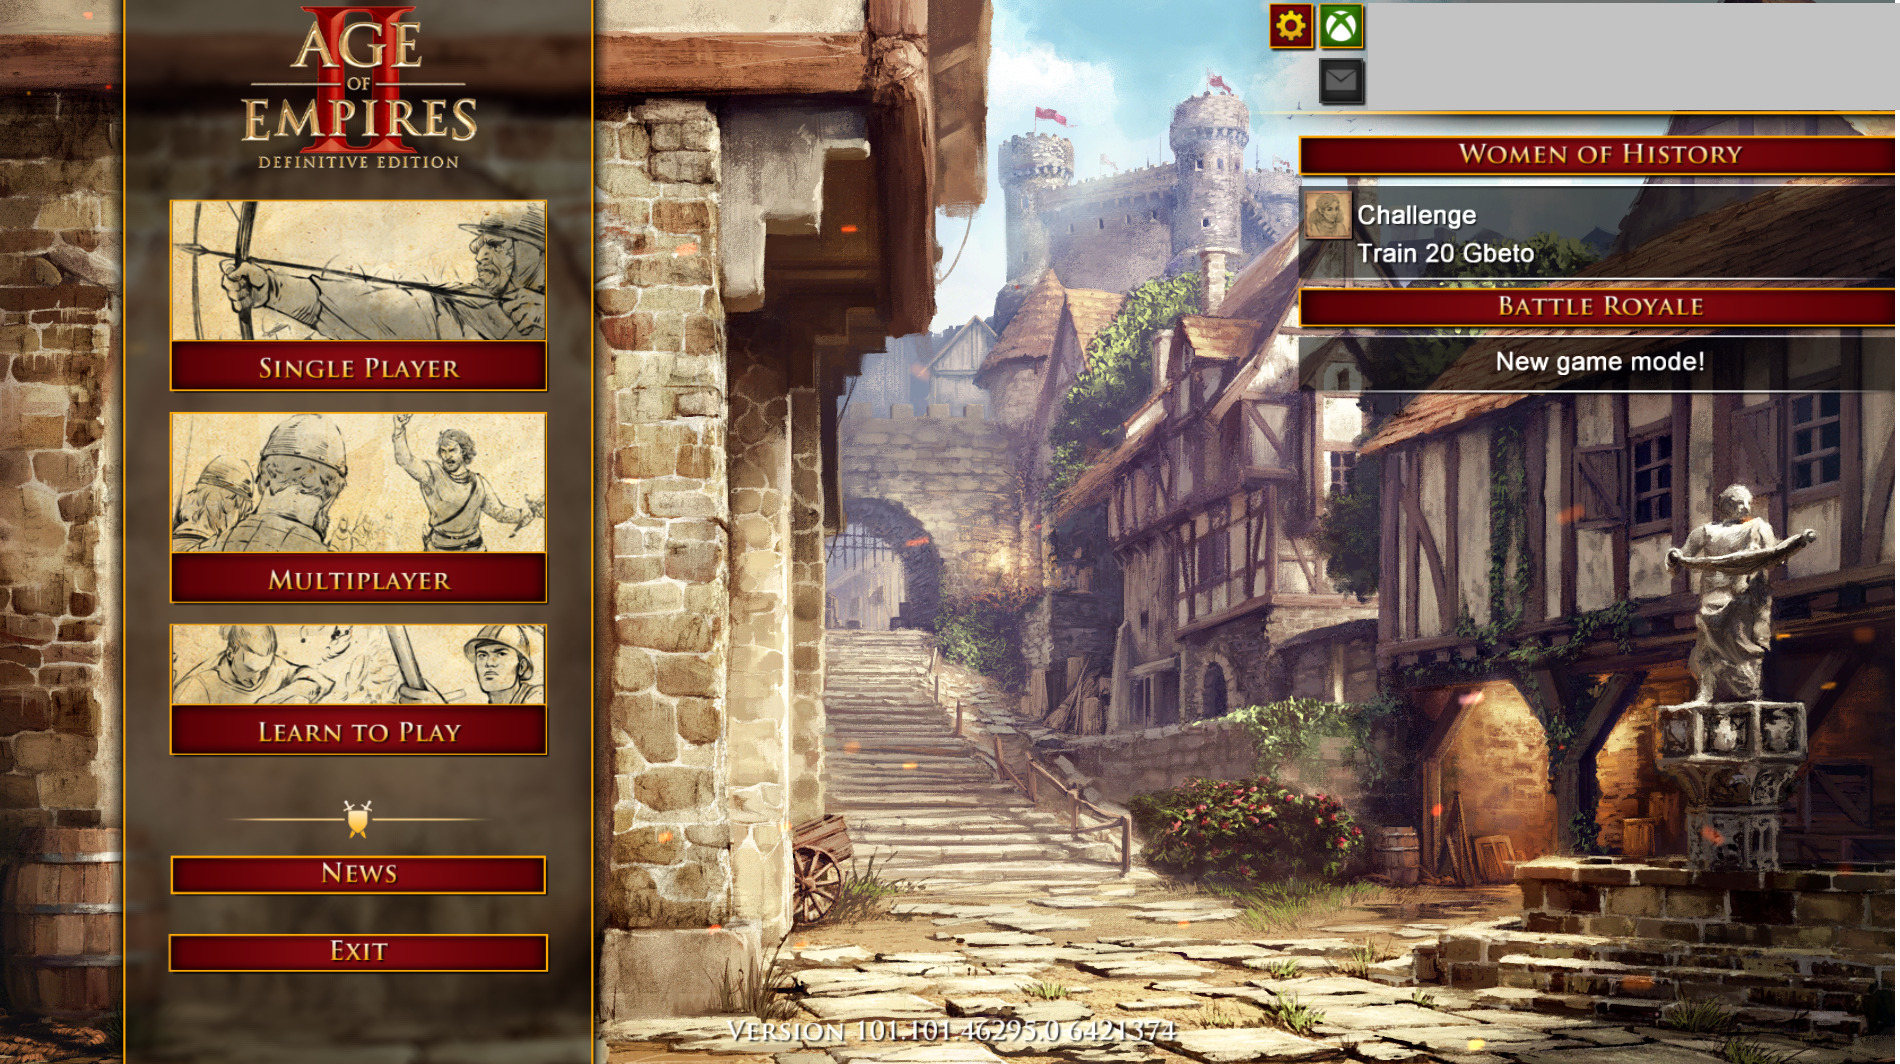 Hình nền menu chính không hiển thị - Yêu cầu trợ giúp - Diễn đàn Age of Empires: Nếu bạn gặp vấn đề về hình nền menu chính không hiển thị trong trò chơi Age of Empires, hãy xem hình ảnh liên quan để tìm kiếm giải pháp cho vấn đề của mình. Diễn đàn Age of Empires là nơi để người chơi trao đổi và được hỗ trợ nhanh chóng.